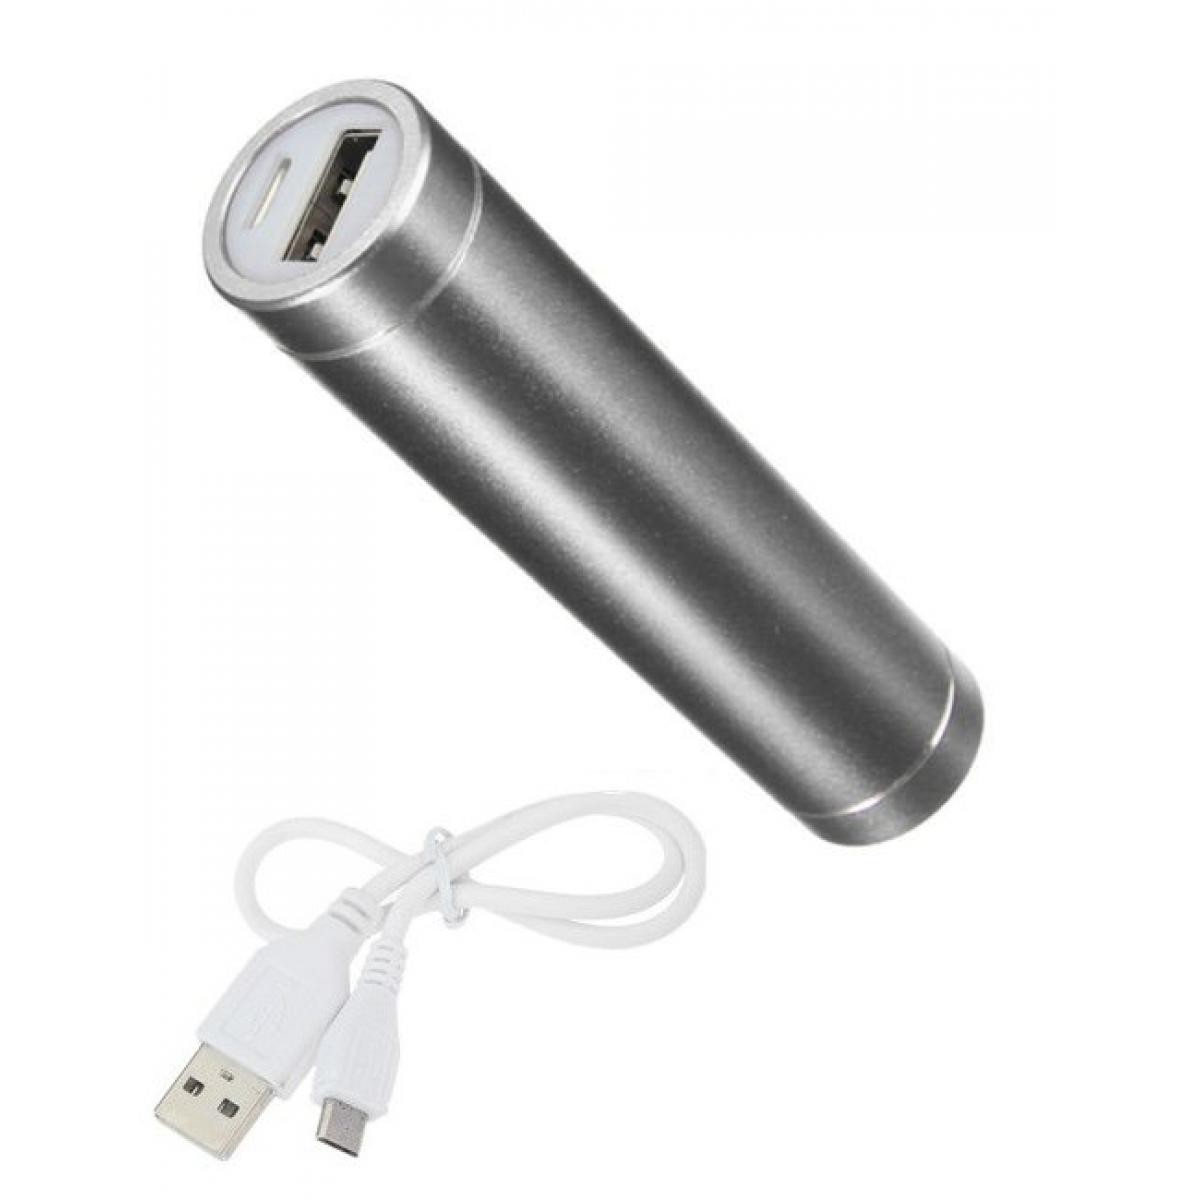 Shot - Batterie Chargeur Externe pour SONY Xperia L4 Power Bank 2600mAh avec Cable USB/Mirco USB Secours Telephone (ARGENT) - Chargeur secteur téléphone